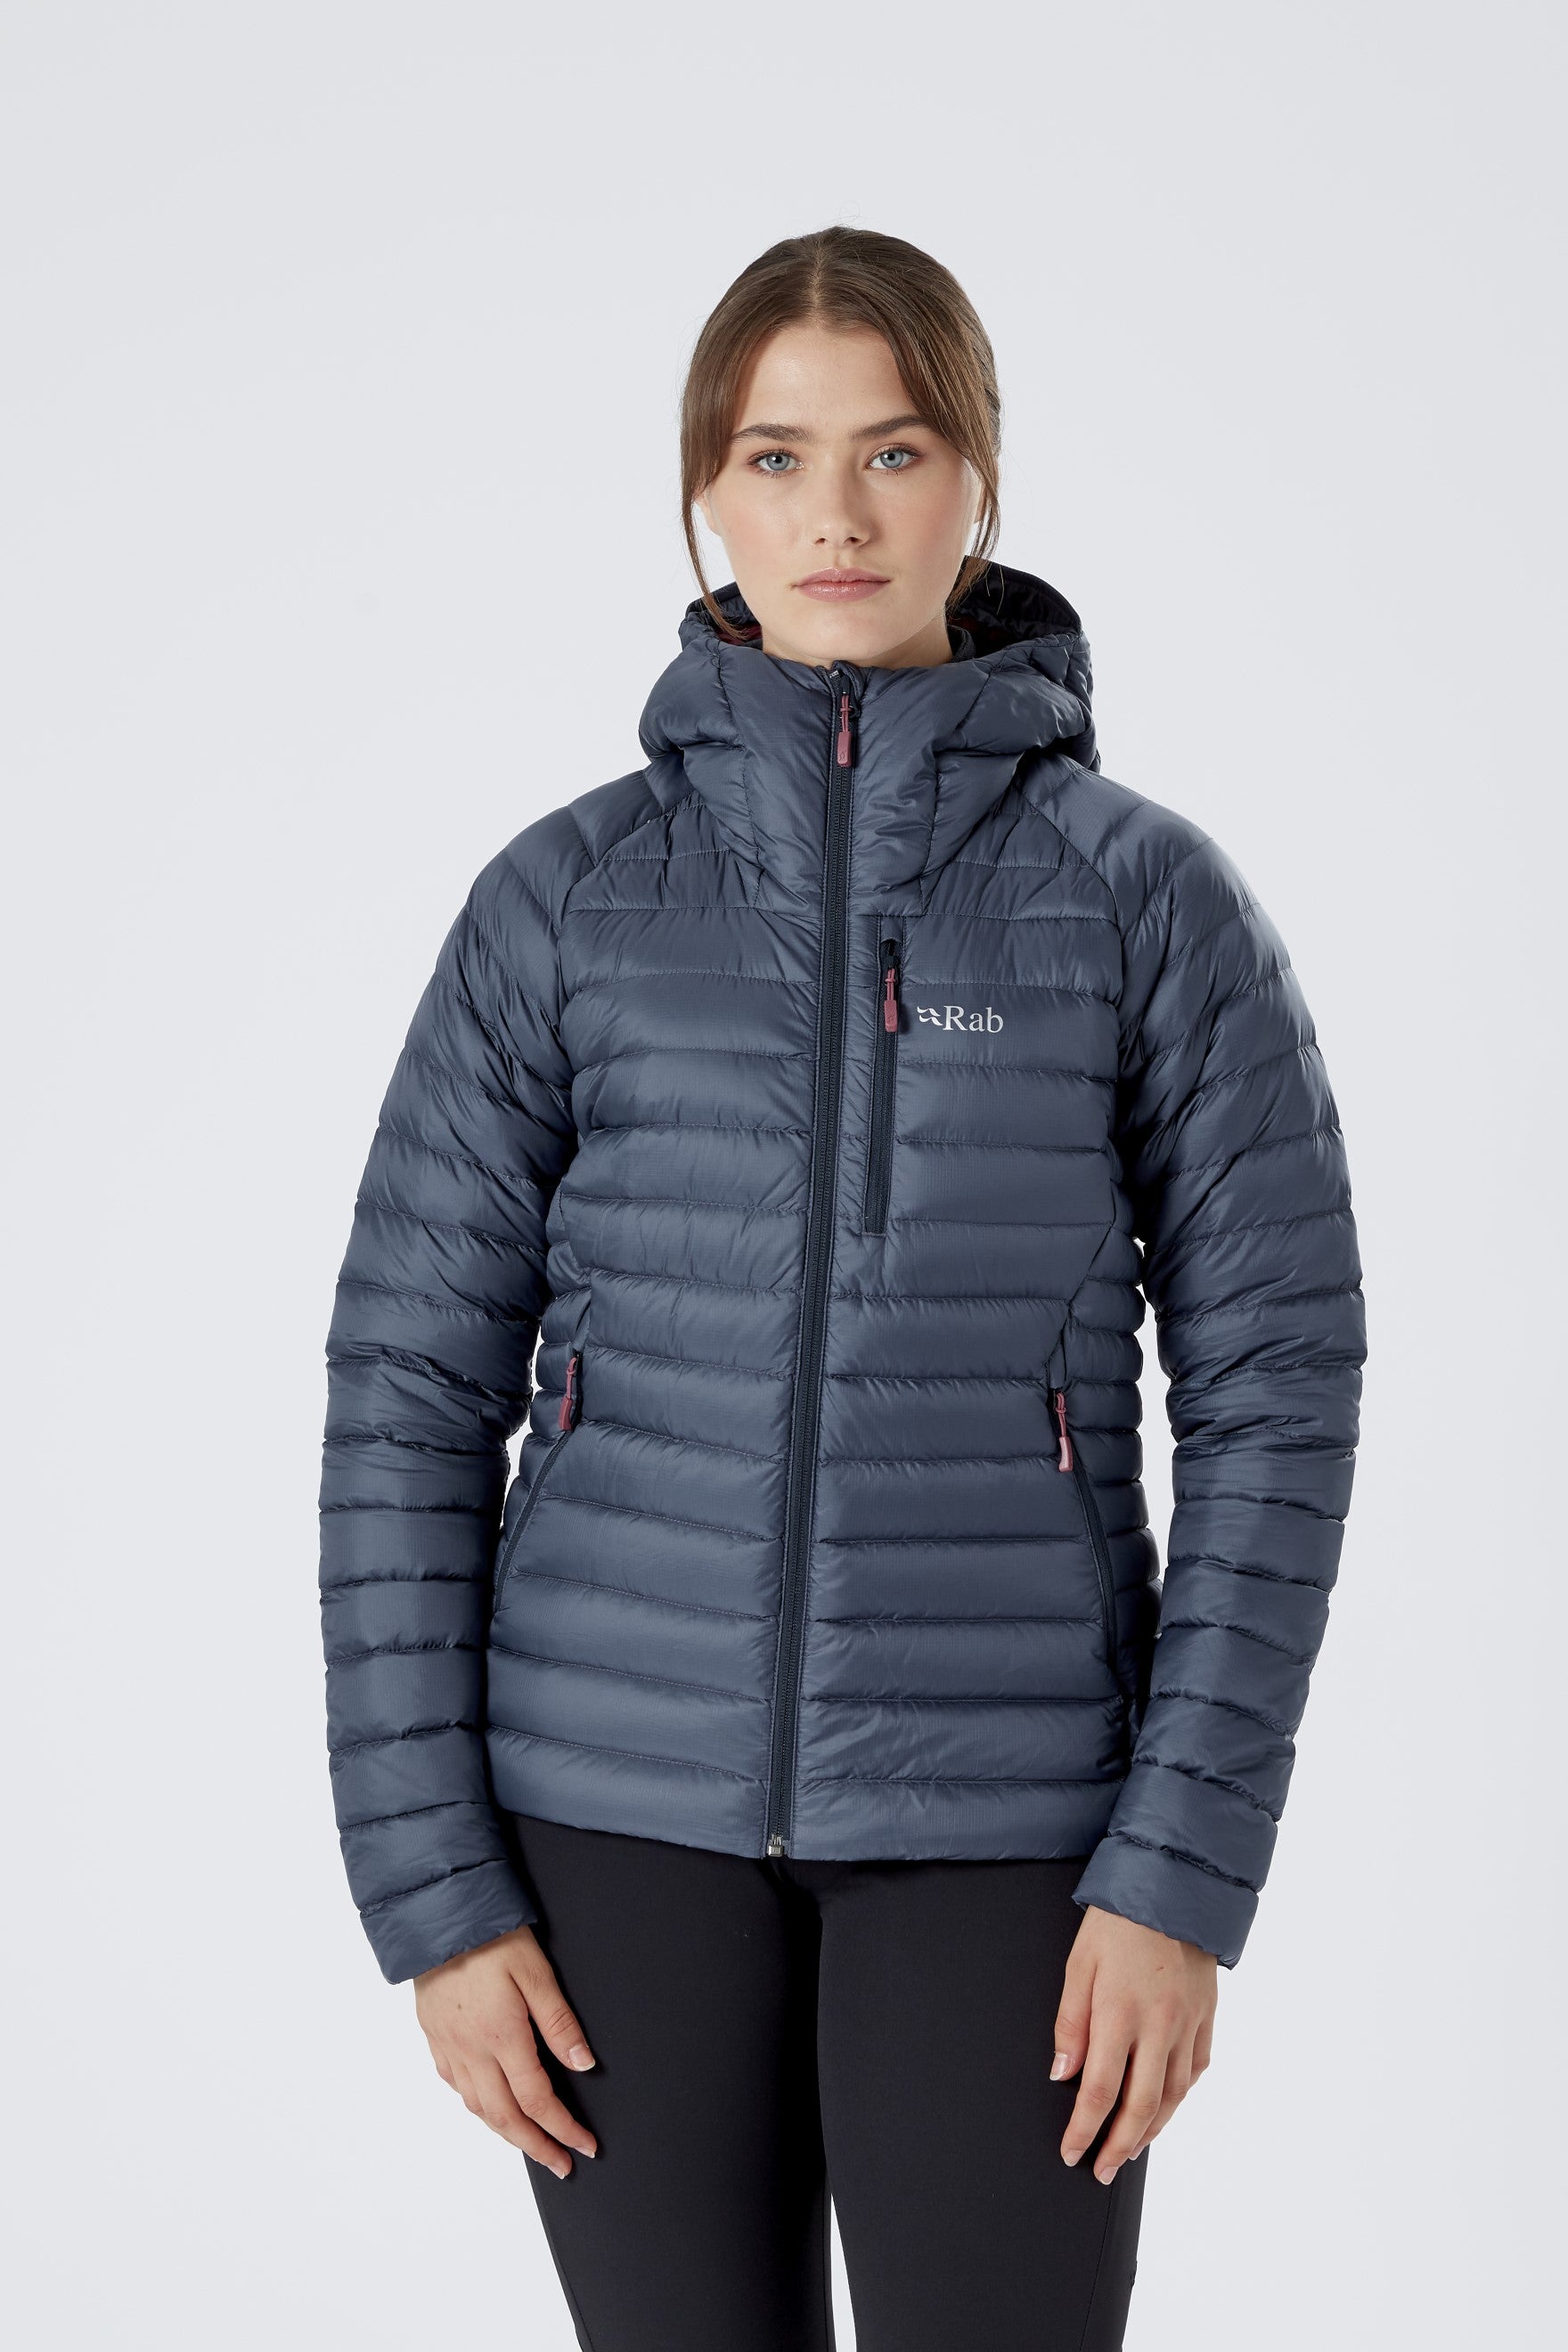 Women's Microlight Alpine Jacket